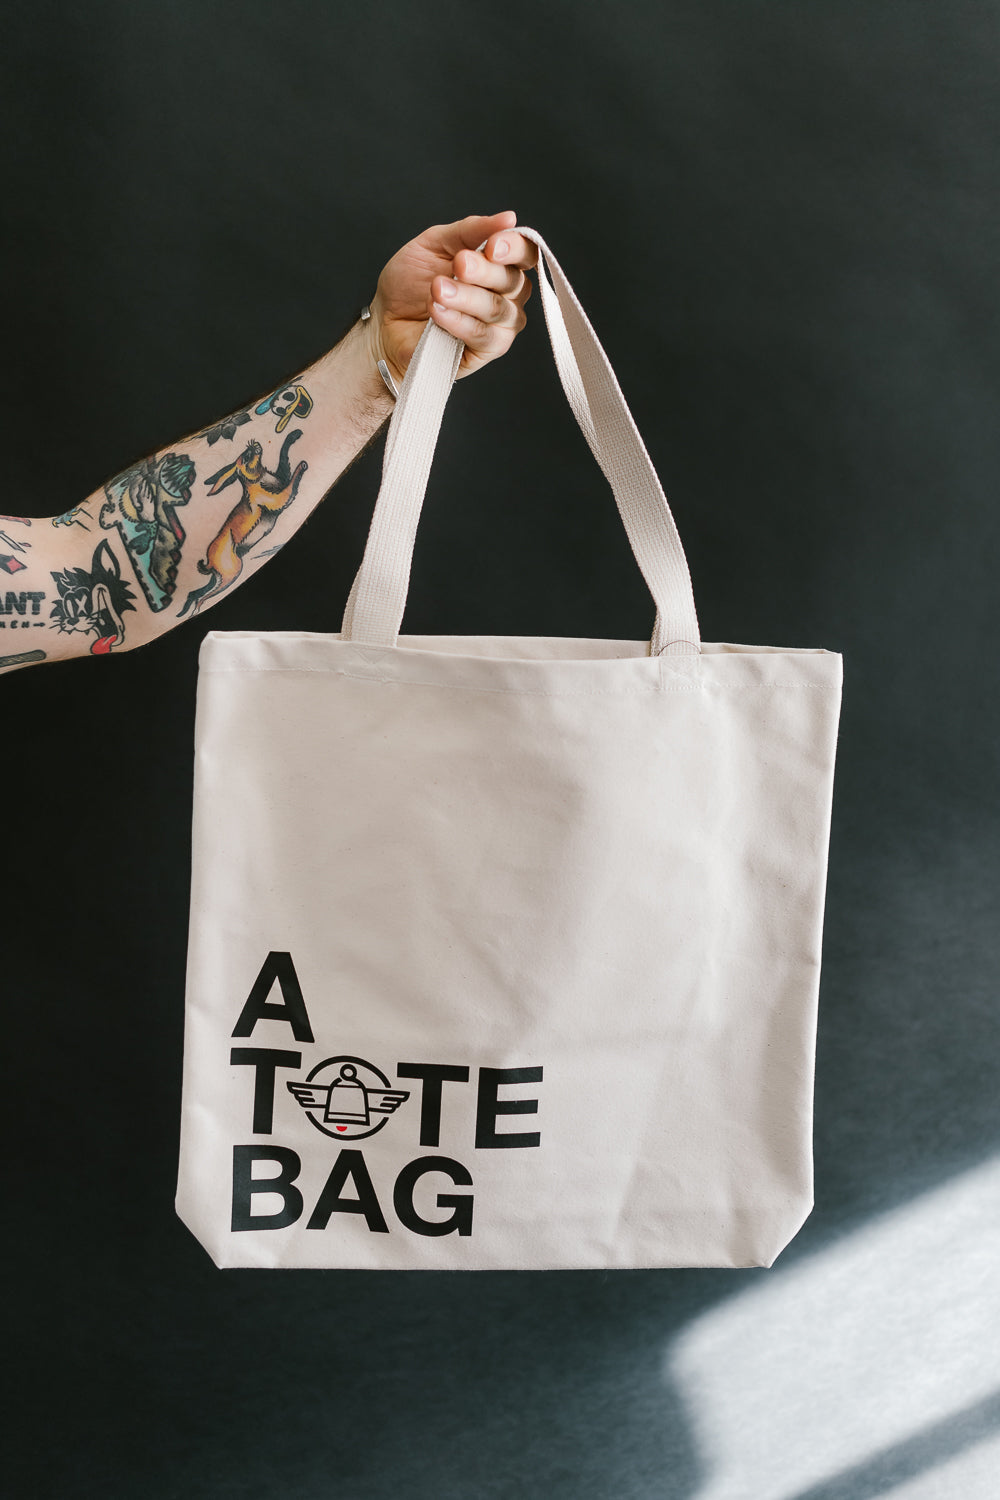 IH-TOTE-ATOTEBAG - Printed Canvas Tote Bag - 'A Tote Bag' Print